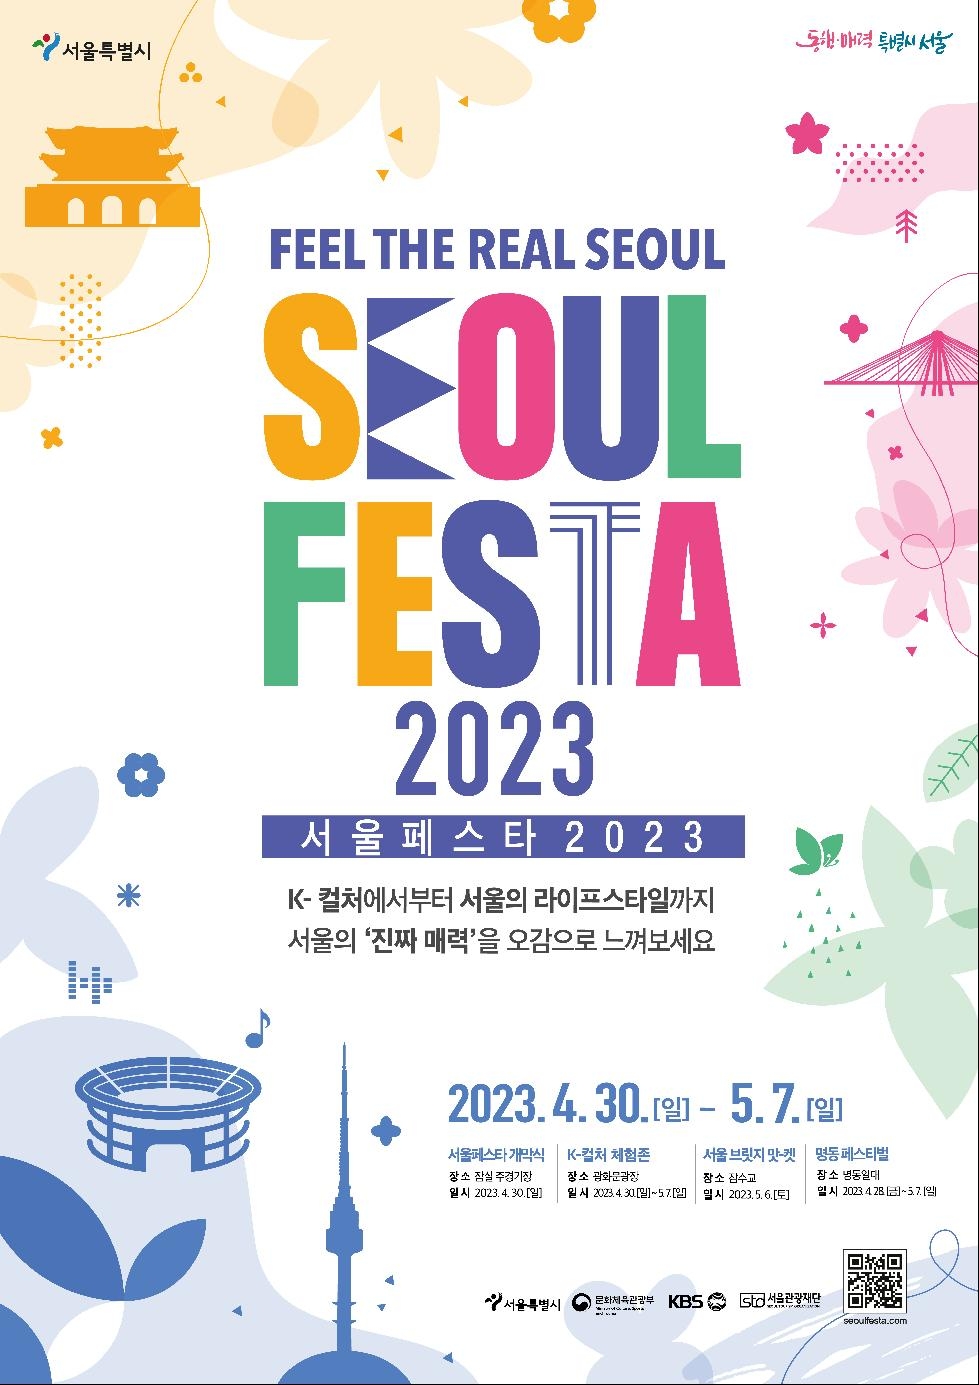 서울 전역에서 펼쳐지는 체험형 축제, `서울페스타 2023` 개최